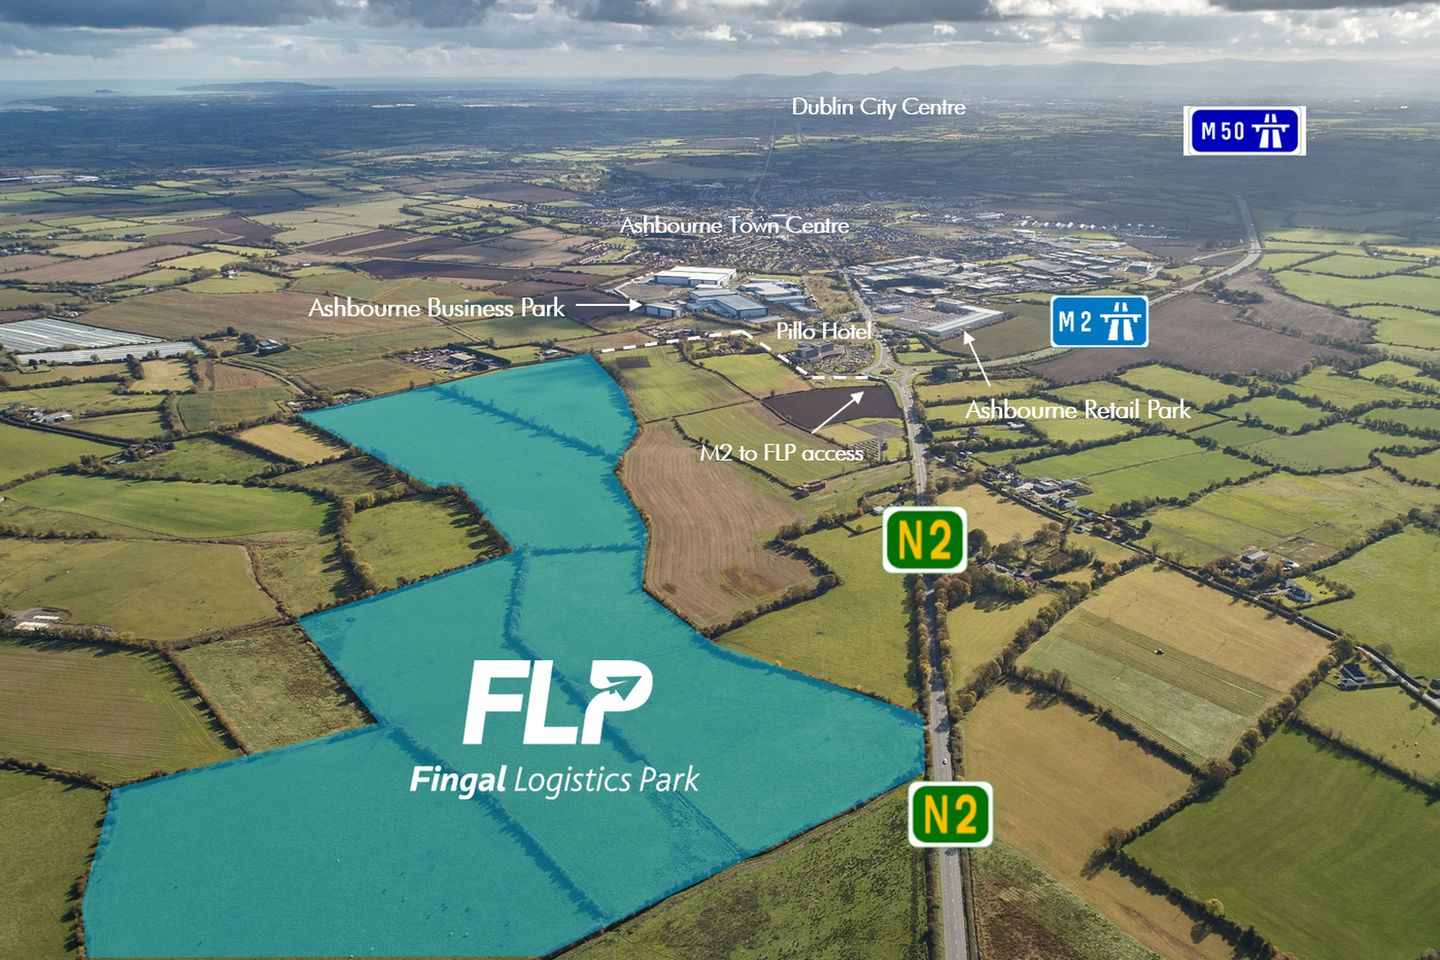 Fingal Logistics Park c. 116 acres / 46.94 HA., Zoned Industrial & Logistics Development, Ashbourne, Co. Meath